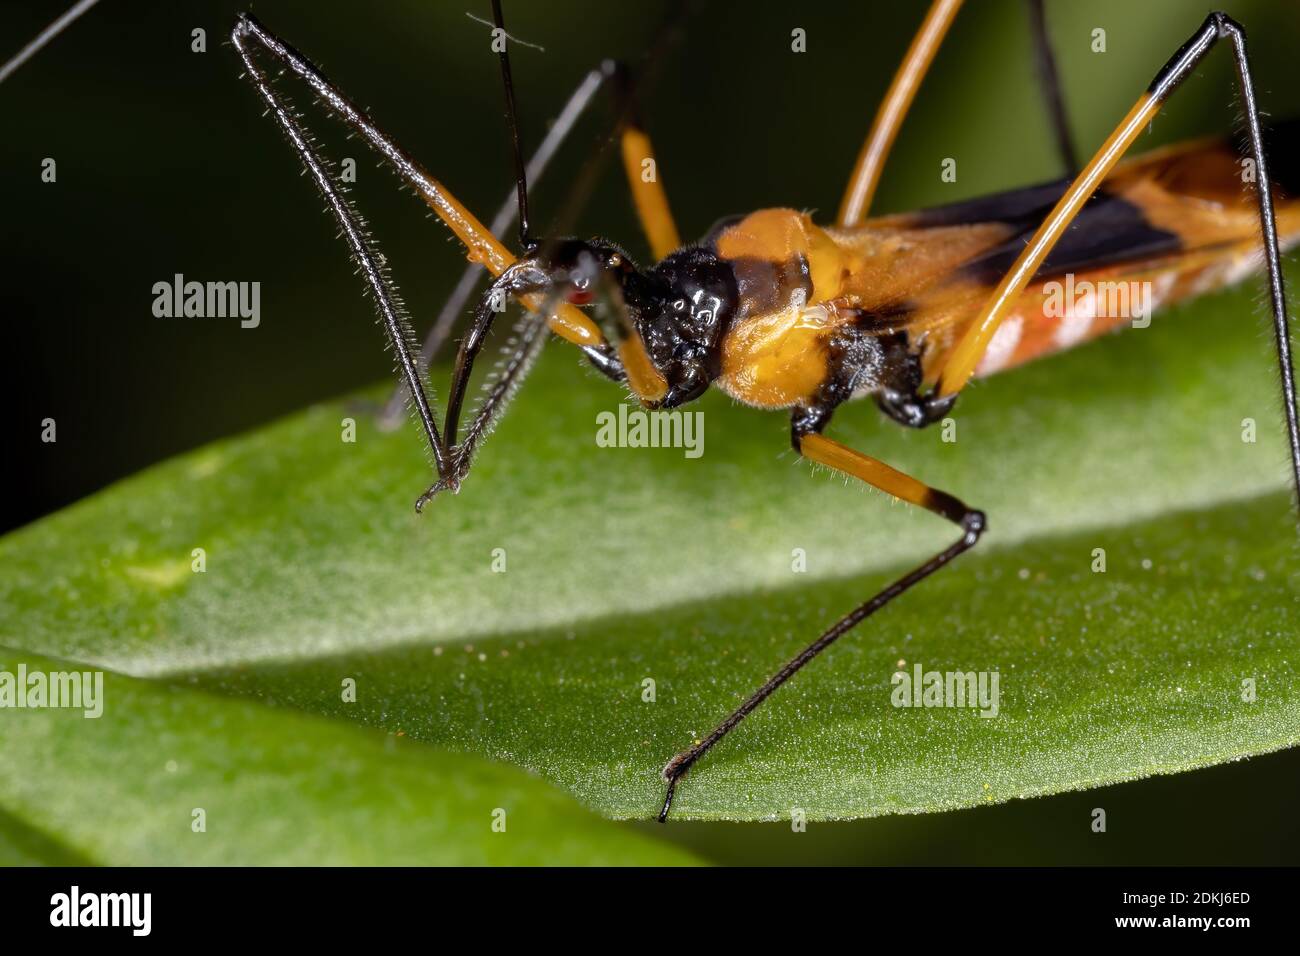 Assassin Bug of the species Zelus vespiformis Stock Photo